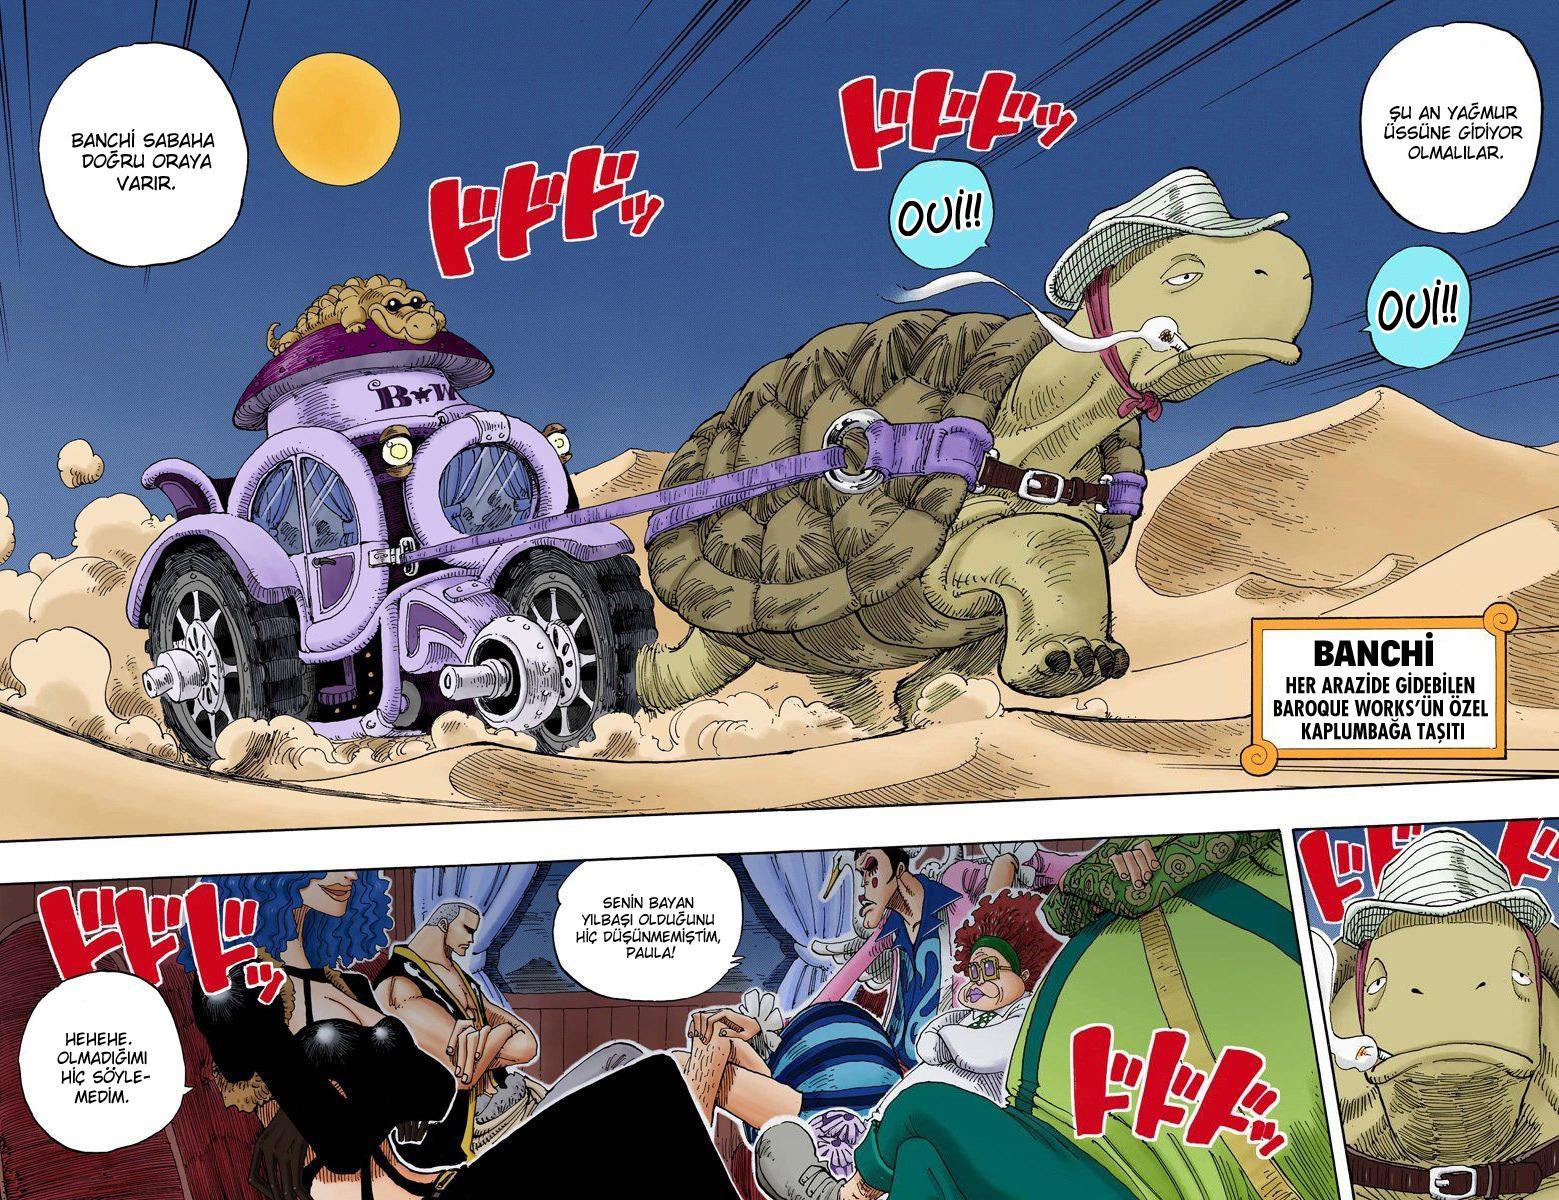 One Piece [Renkli] mangasının 0161 bölümünün 3. sayfasını okuyorsunuz.